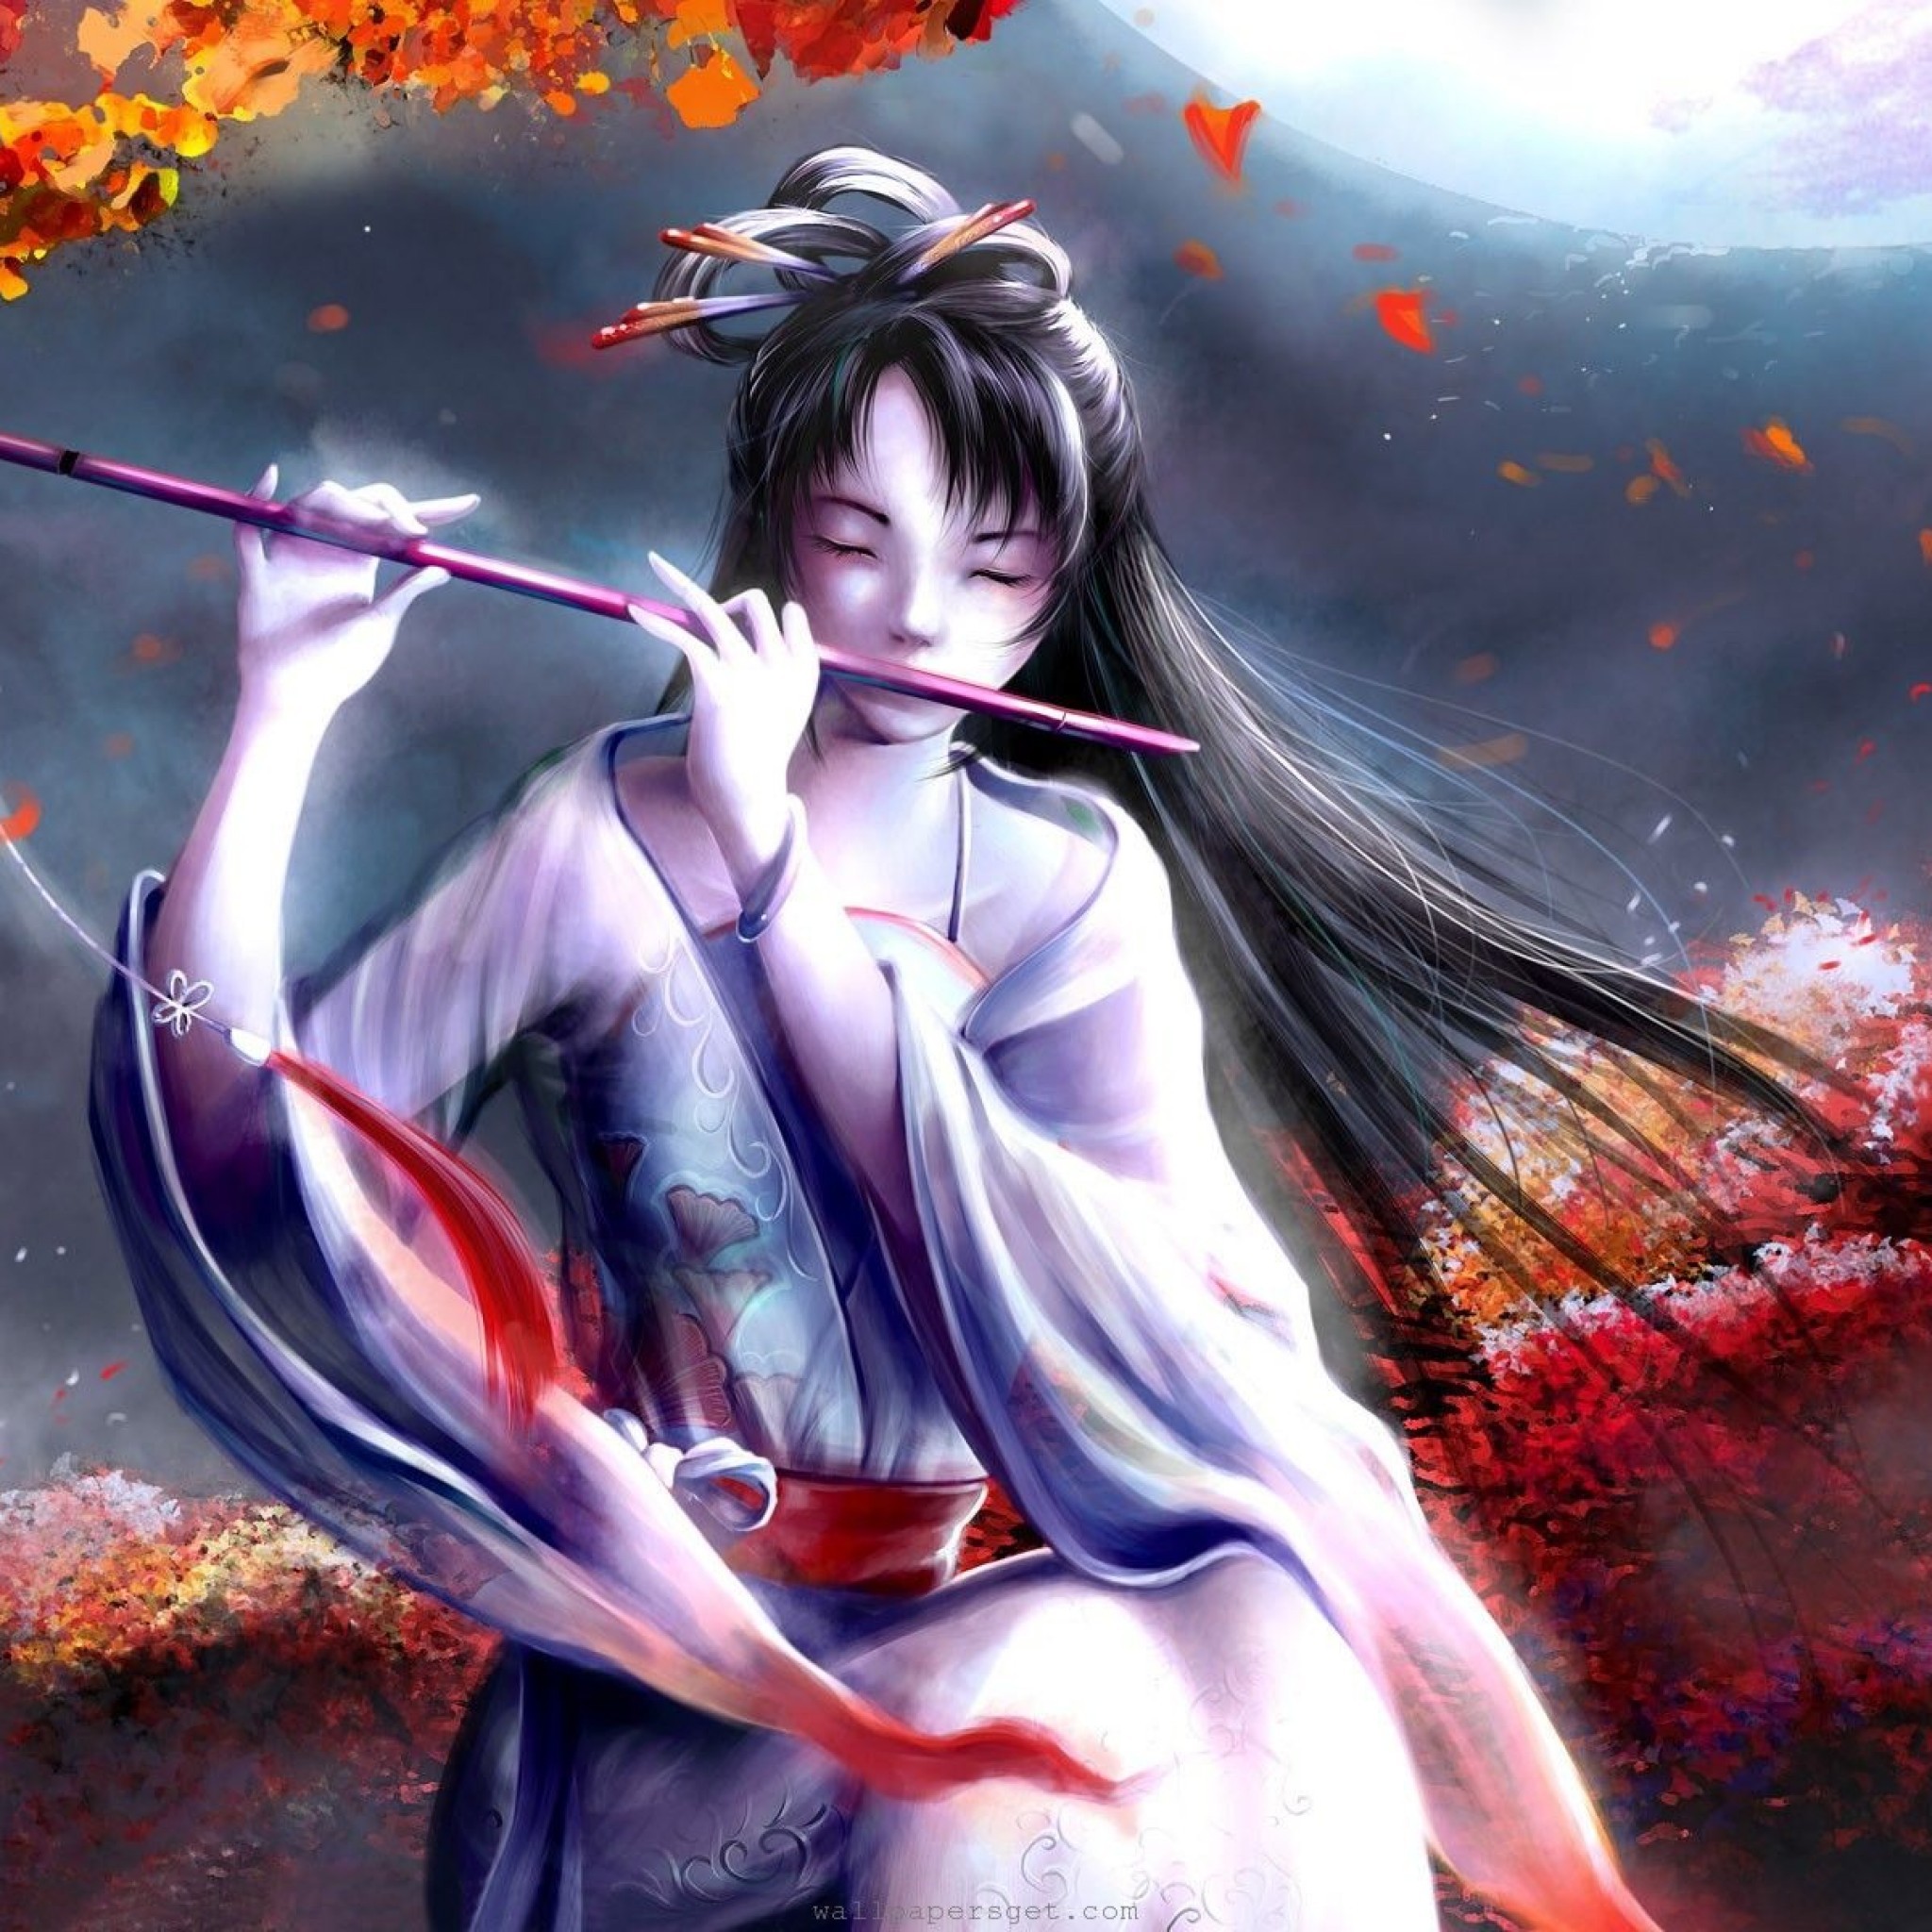 Anime wallpapers flute girl fantasy wallpaper stock Free